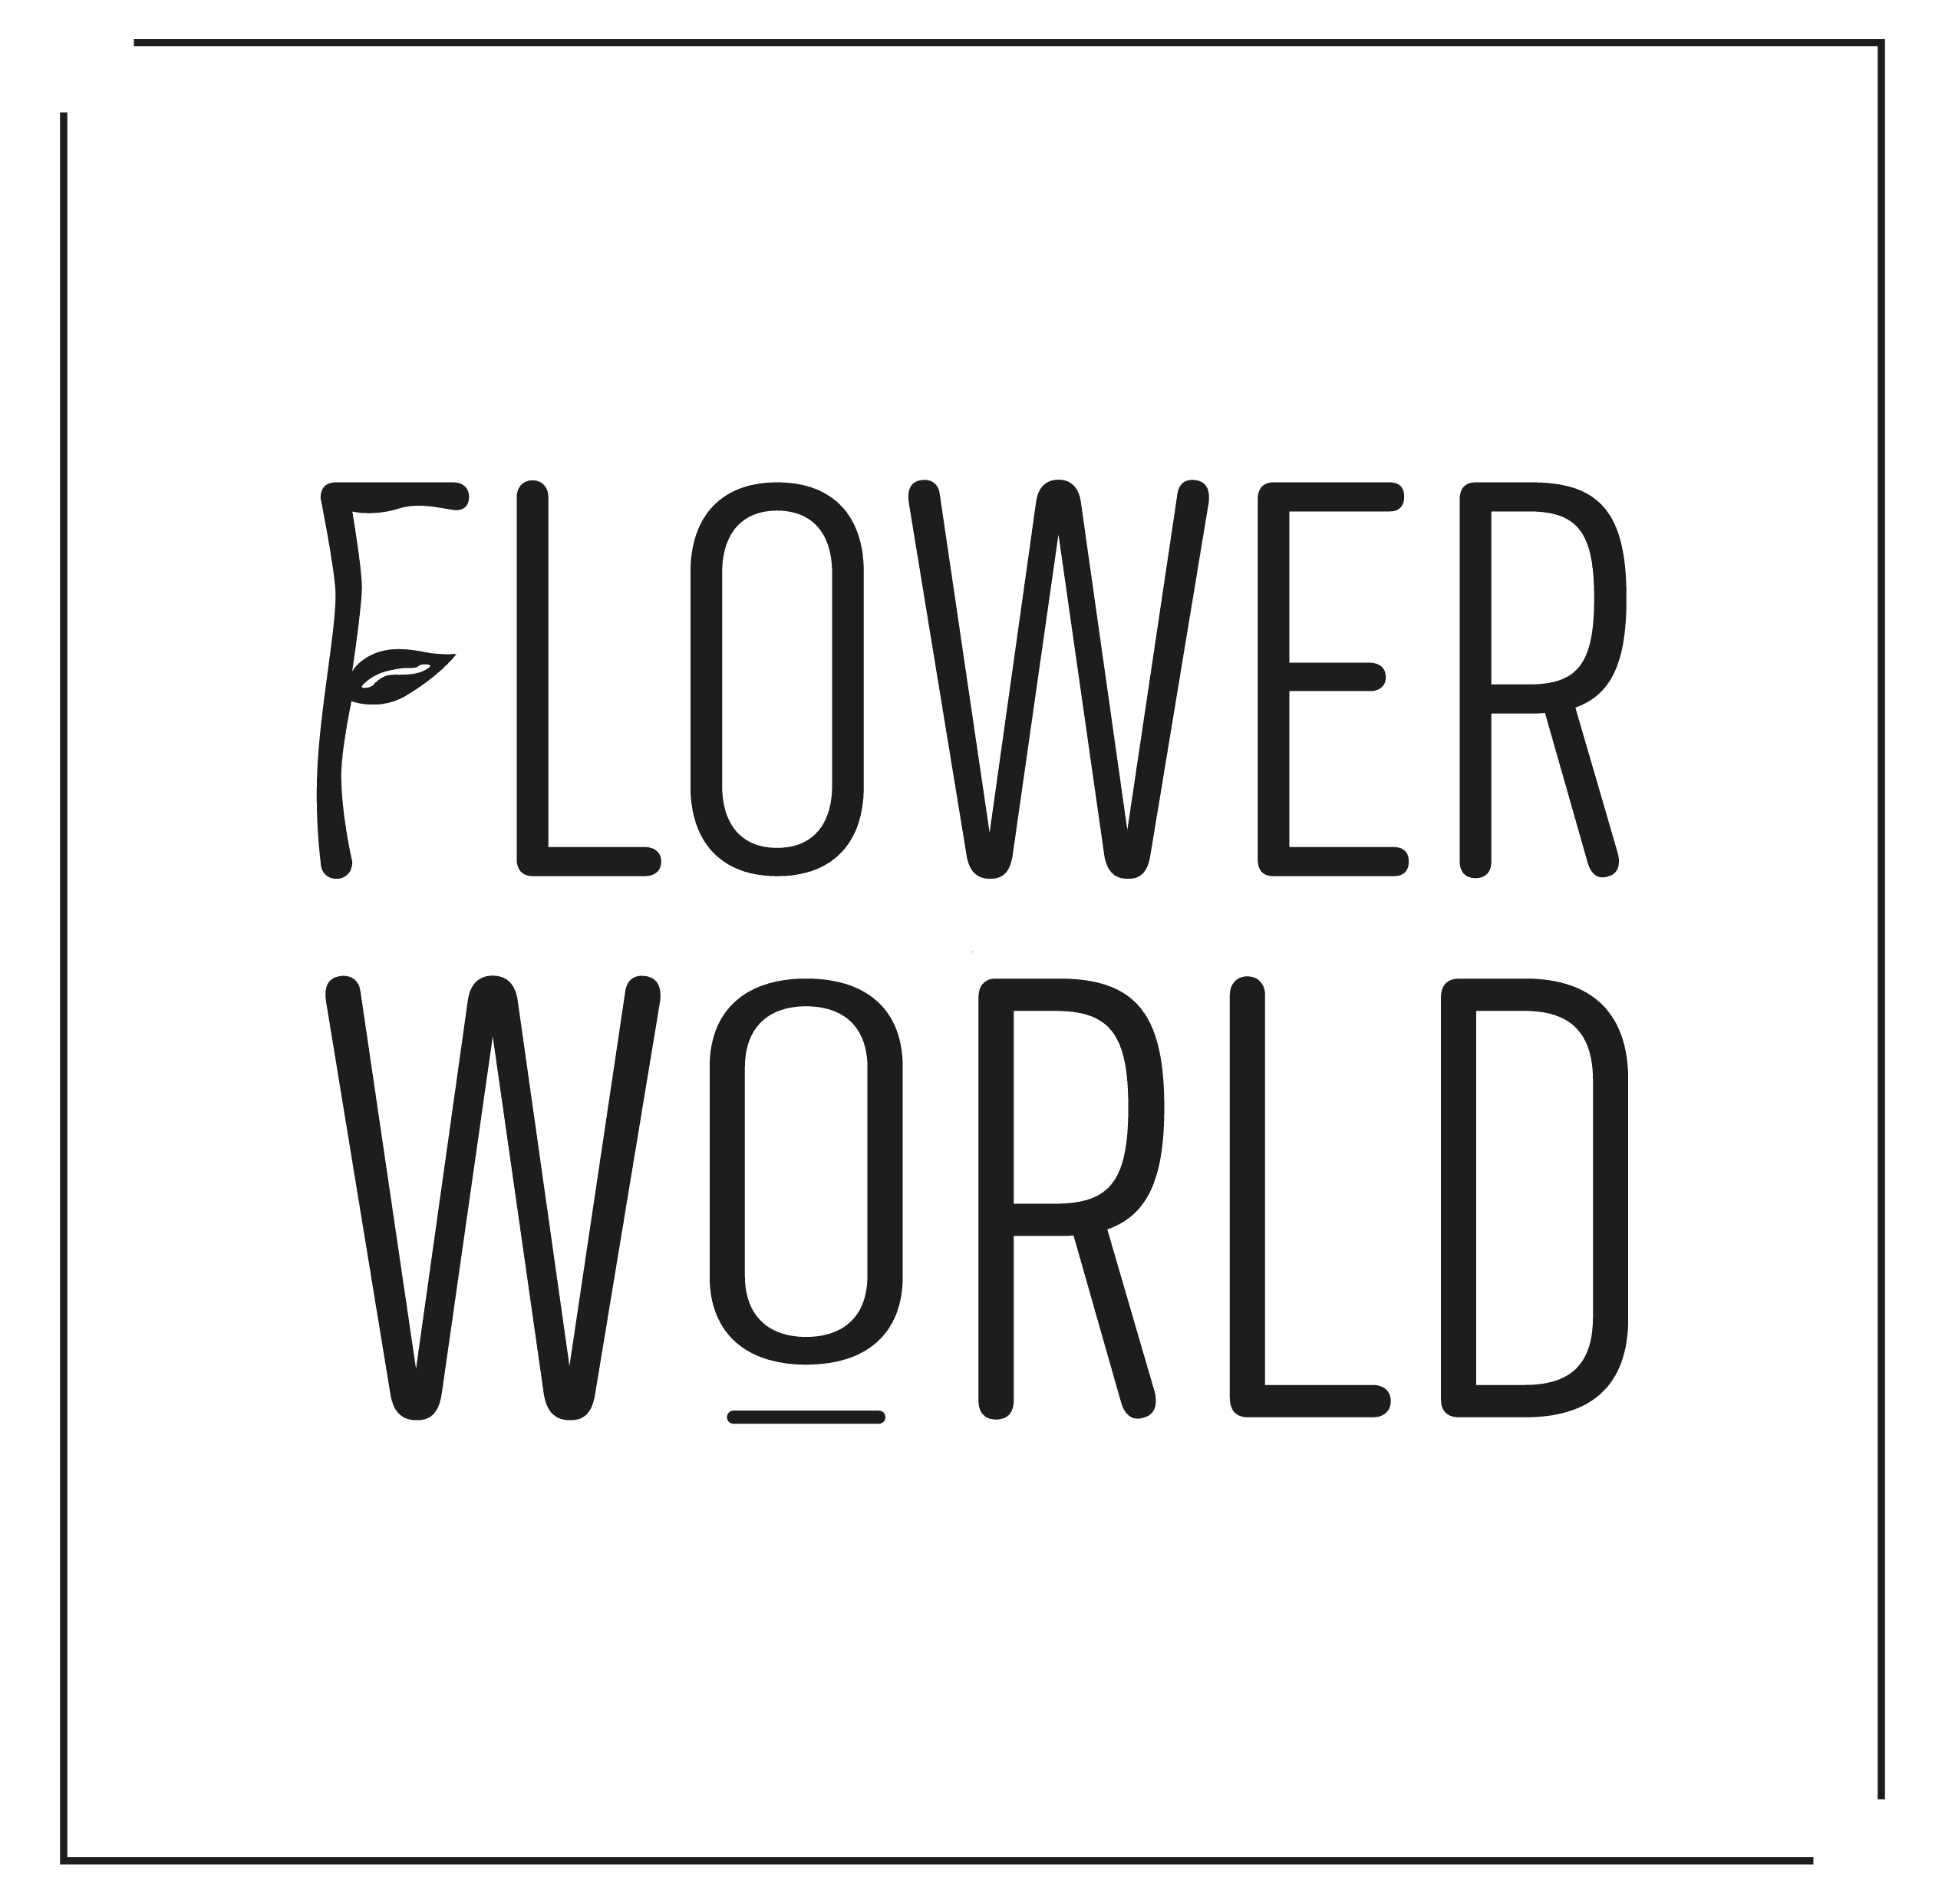 עולם הפרח ציוד לחנויות פרחים ומשתלות